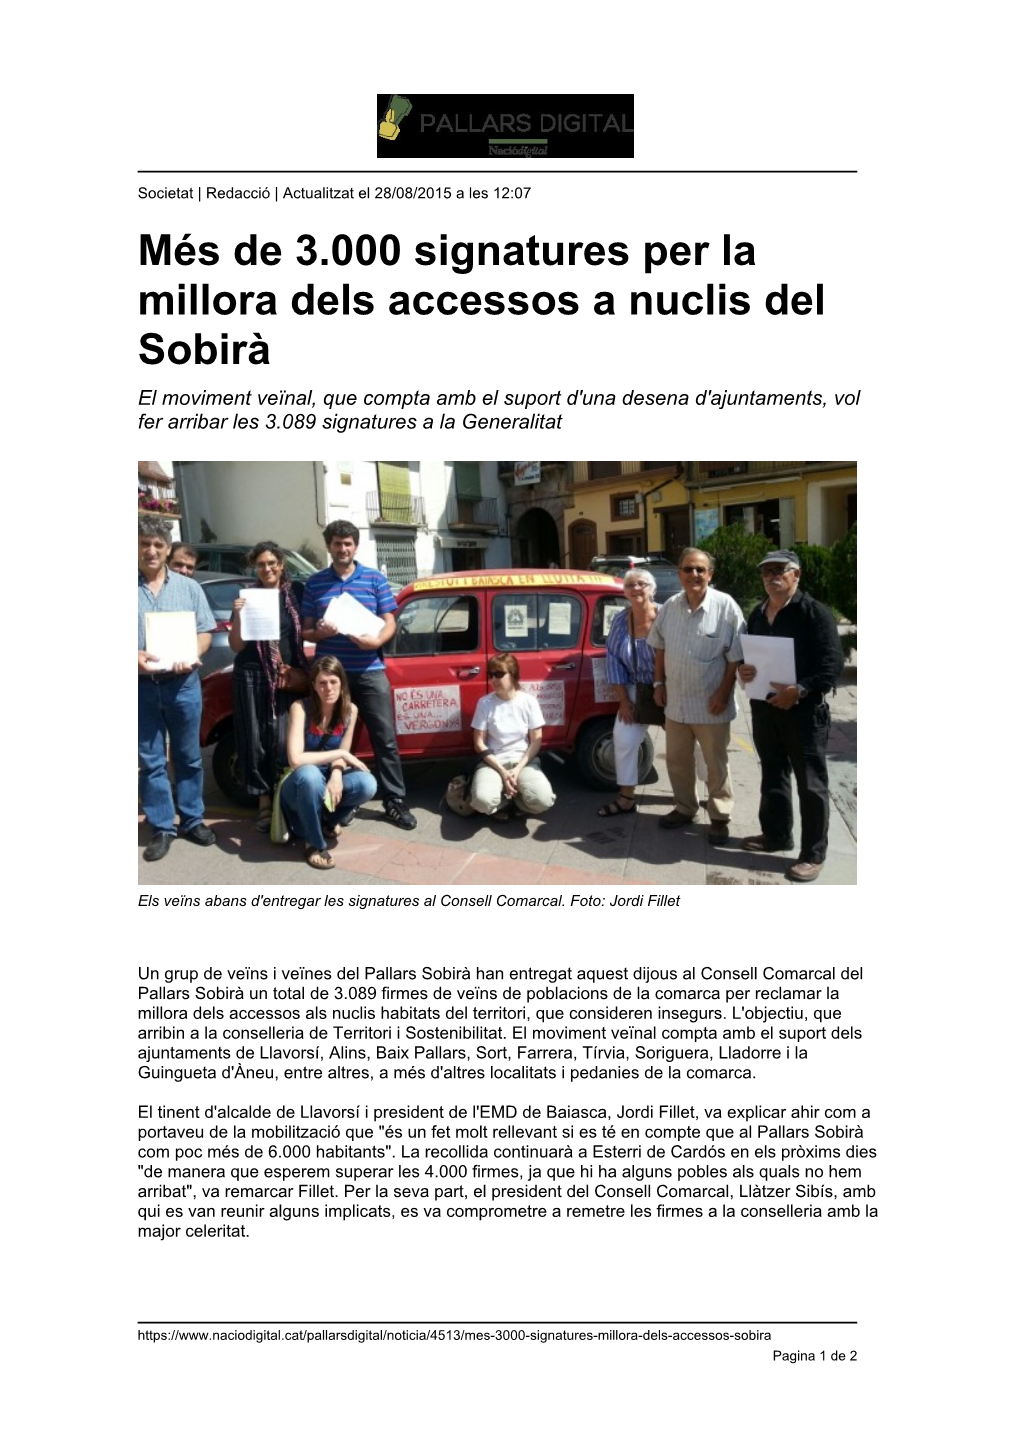 Més De 3.000 Signatures Per La Millora Dels Accessos a Nuclis Del Sobirà